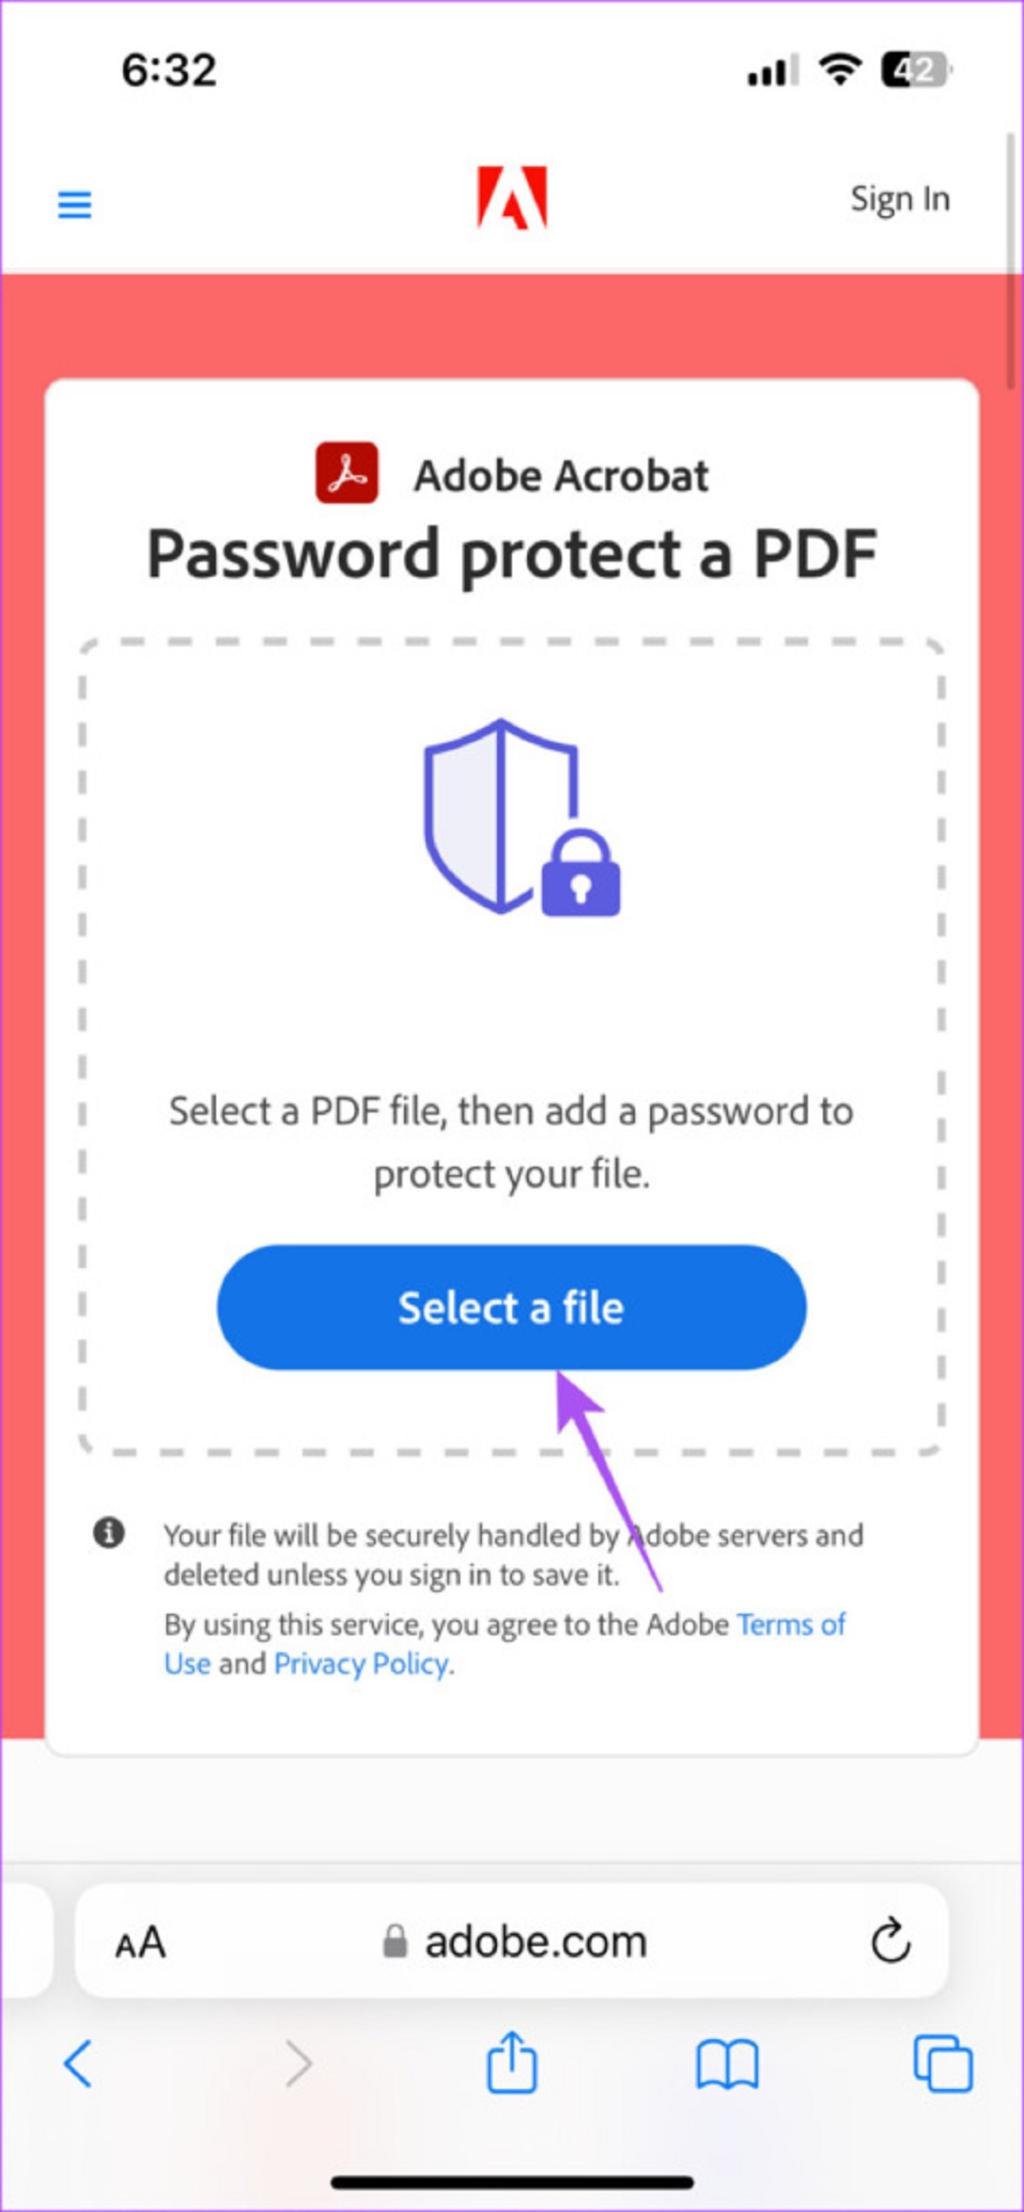 افزودن رمز عبور به PDF با استفاده از Adobe Acrobat در آیفون و آیپد